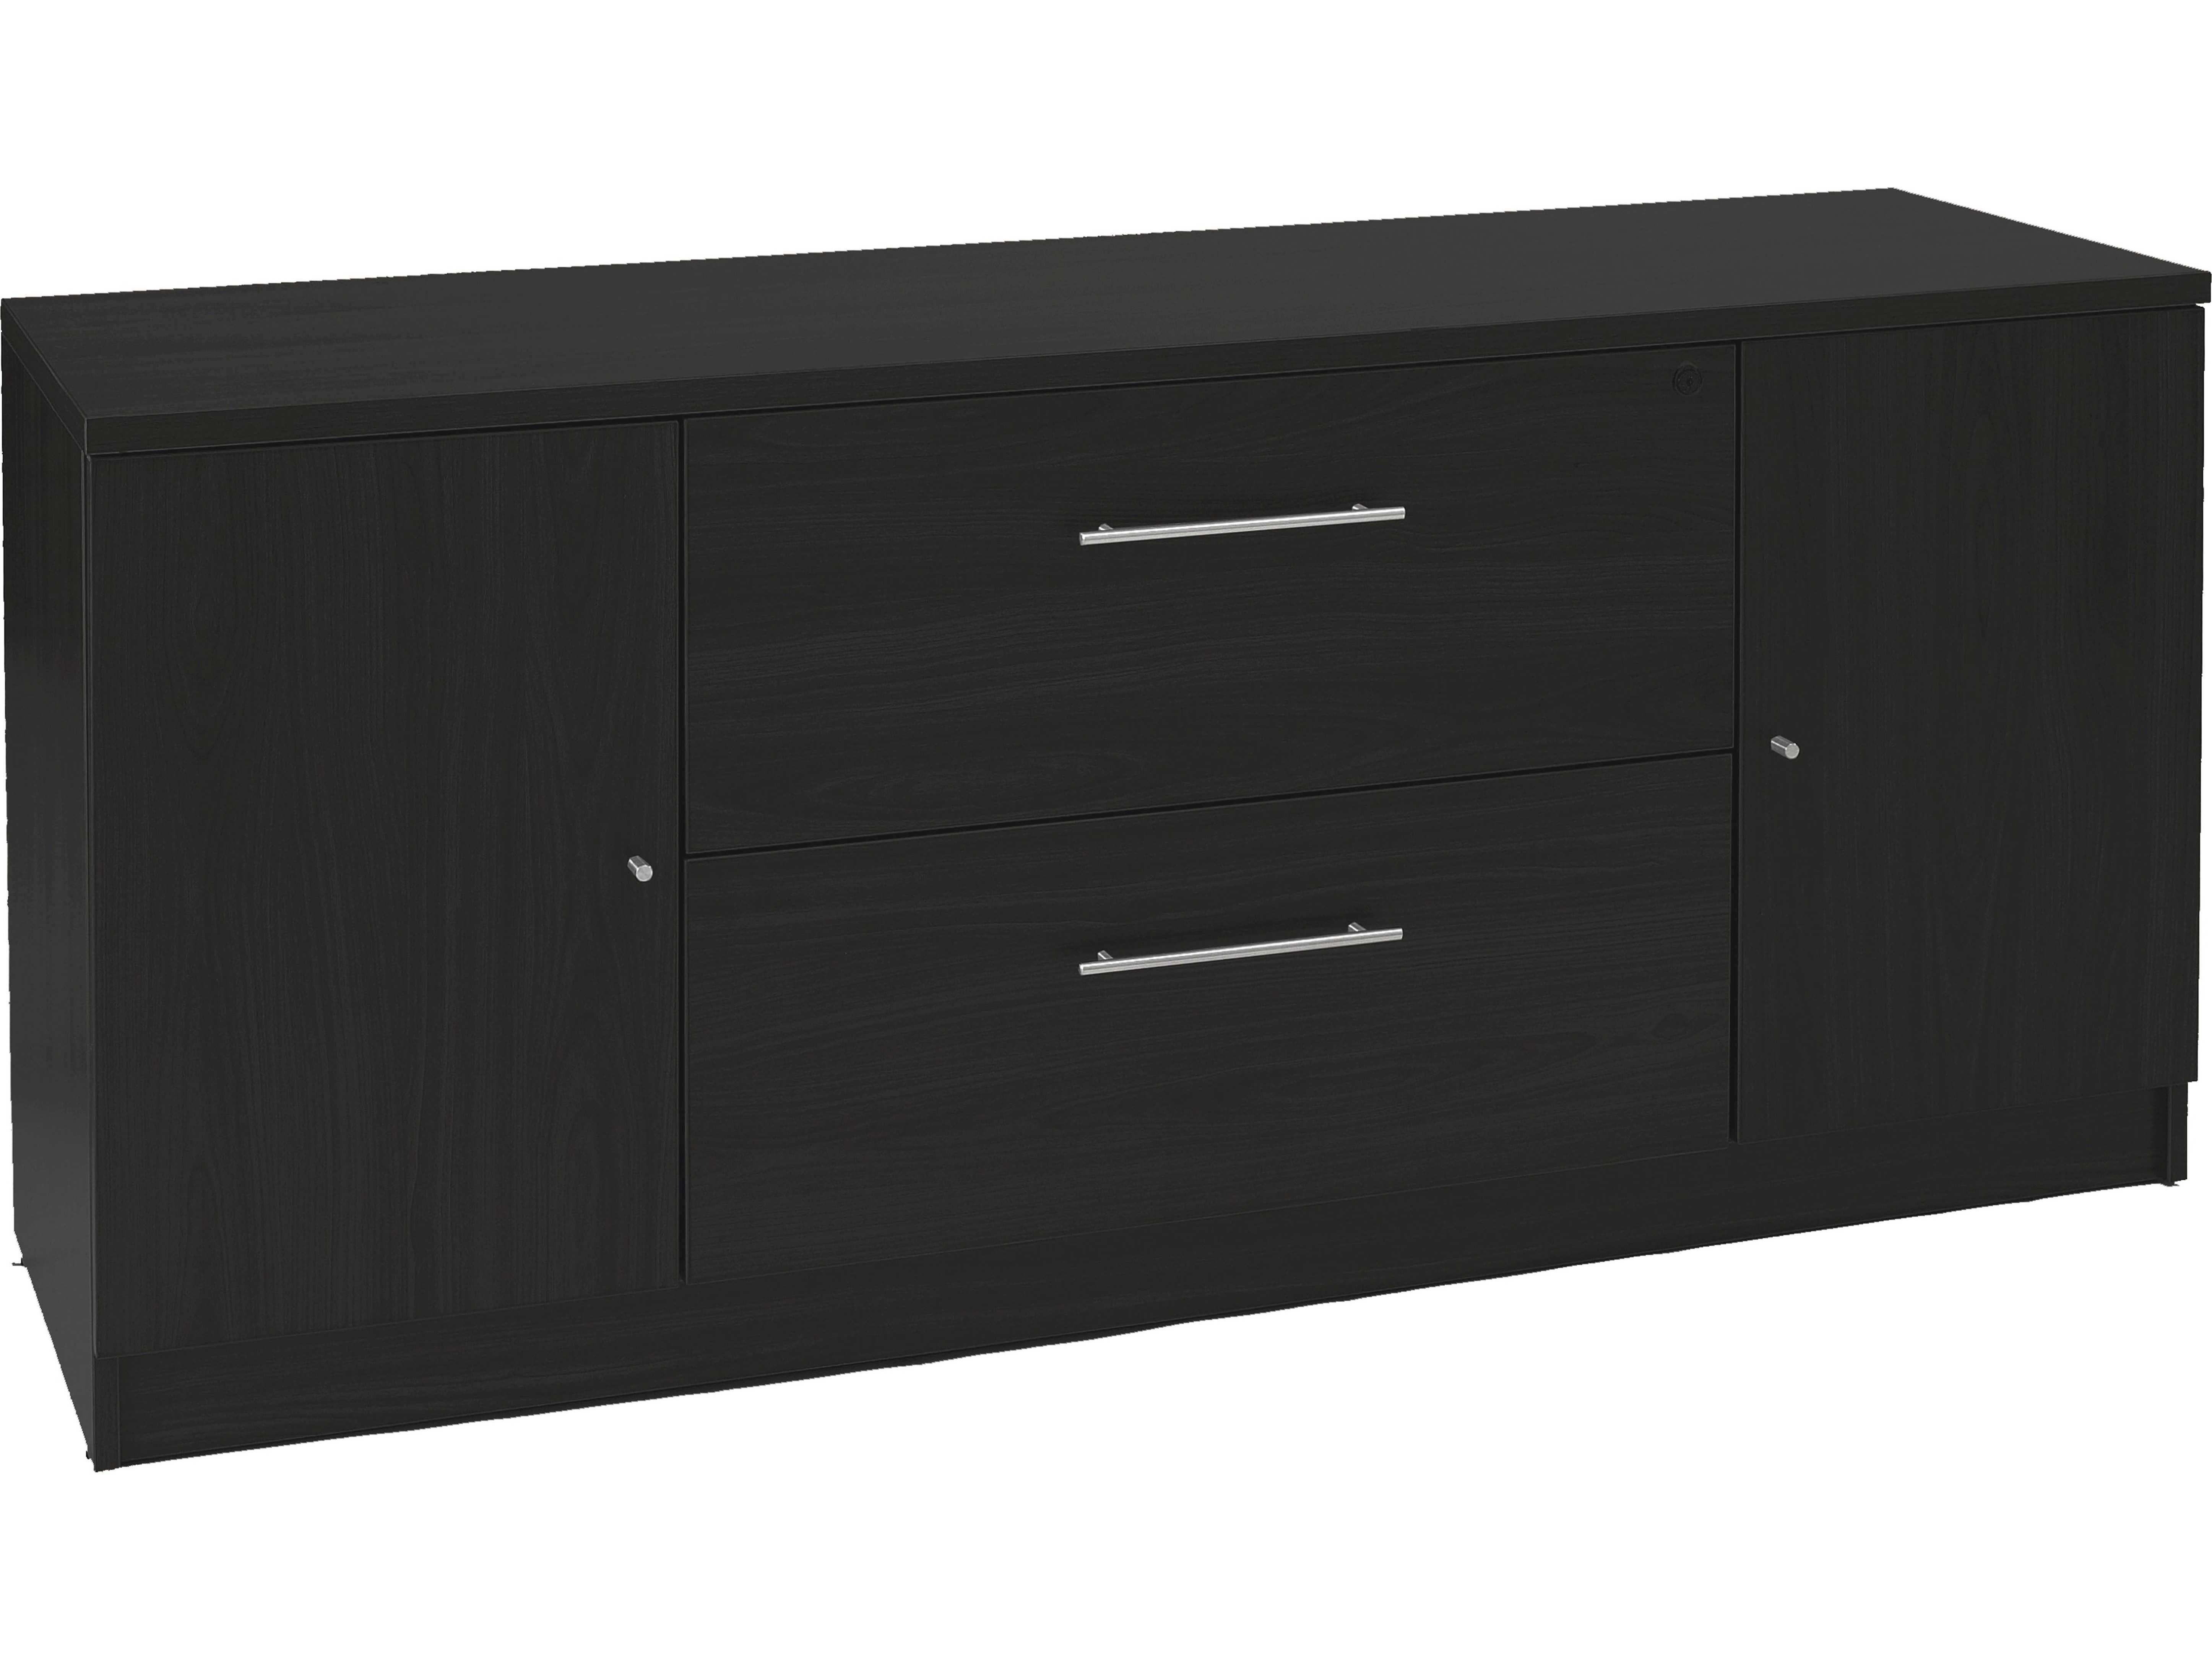 Unique Furniture 100 Series Espresso Credenza File Cabinet with regard to proportions 5786 X 4341